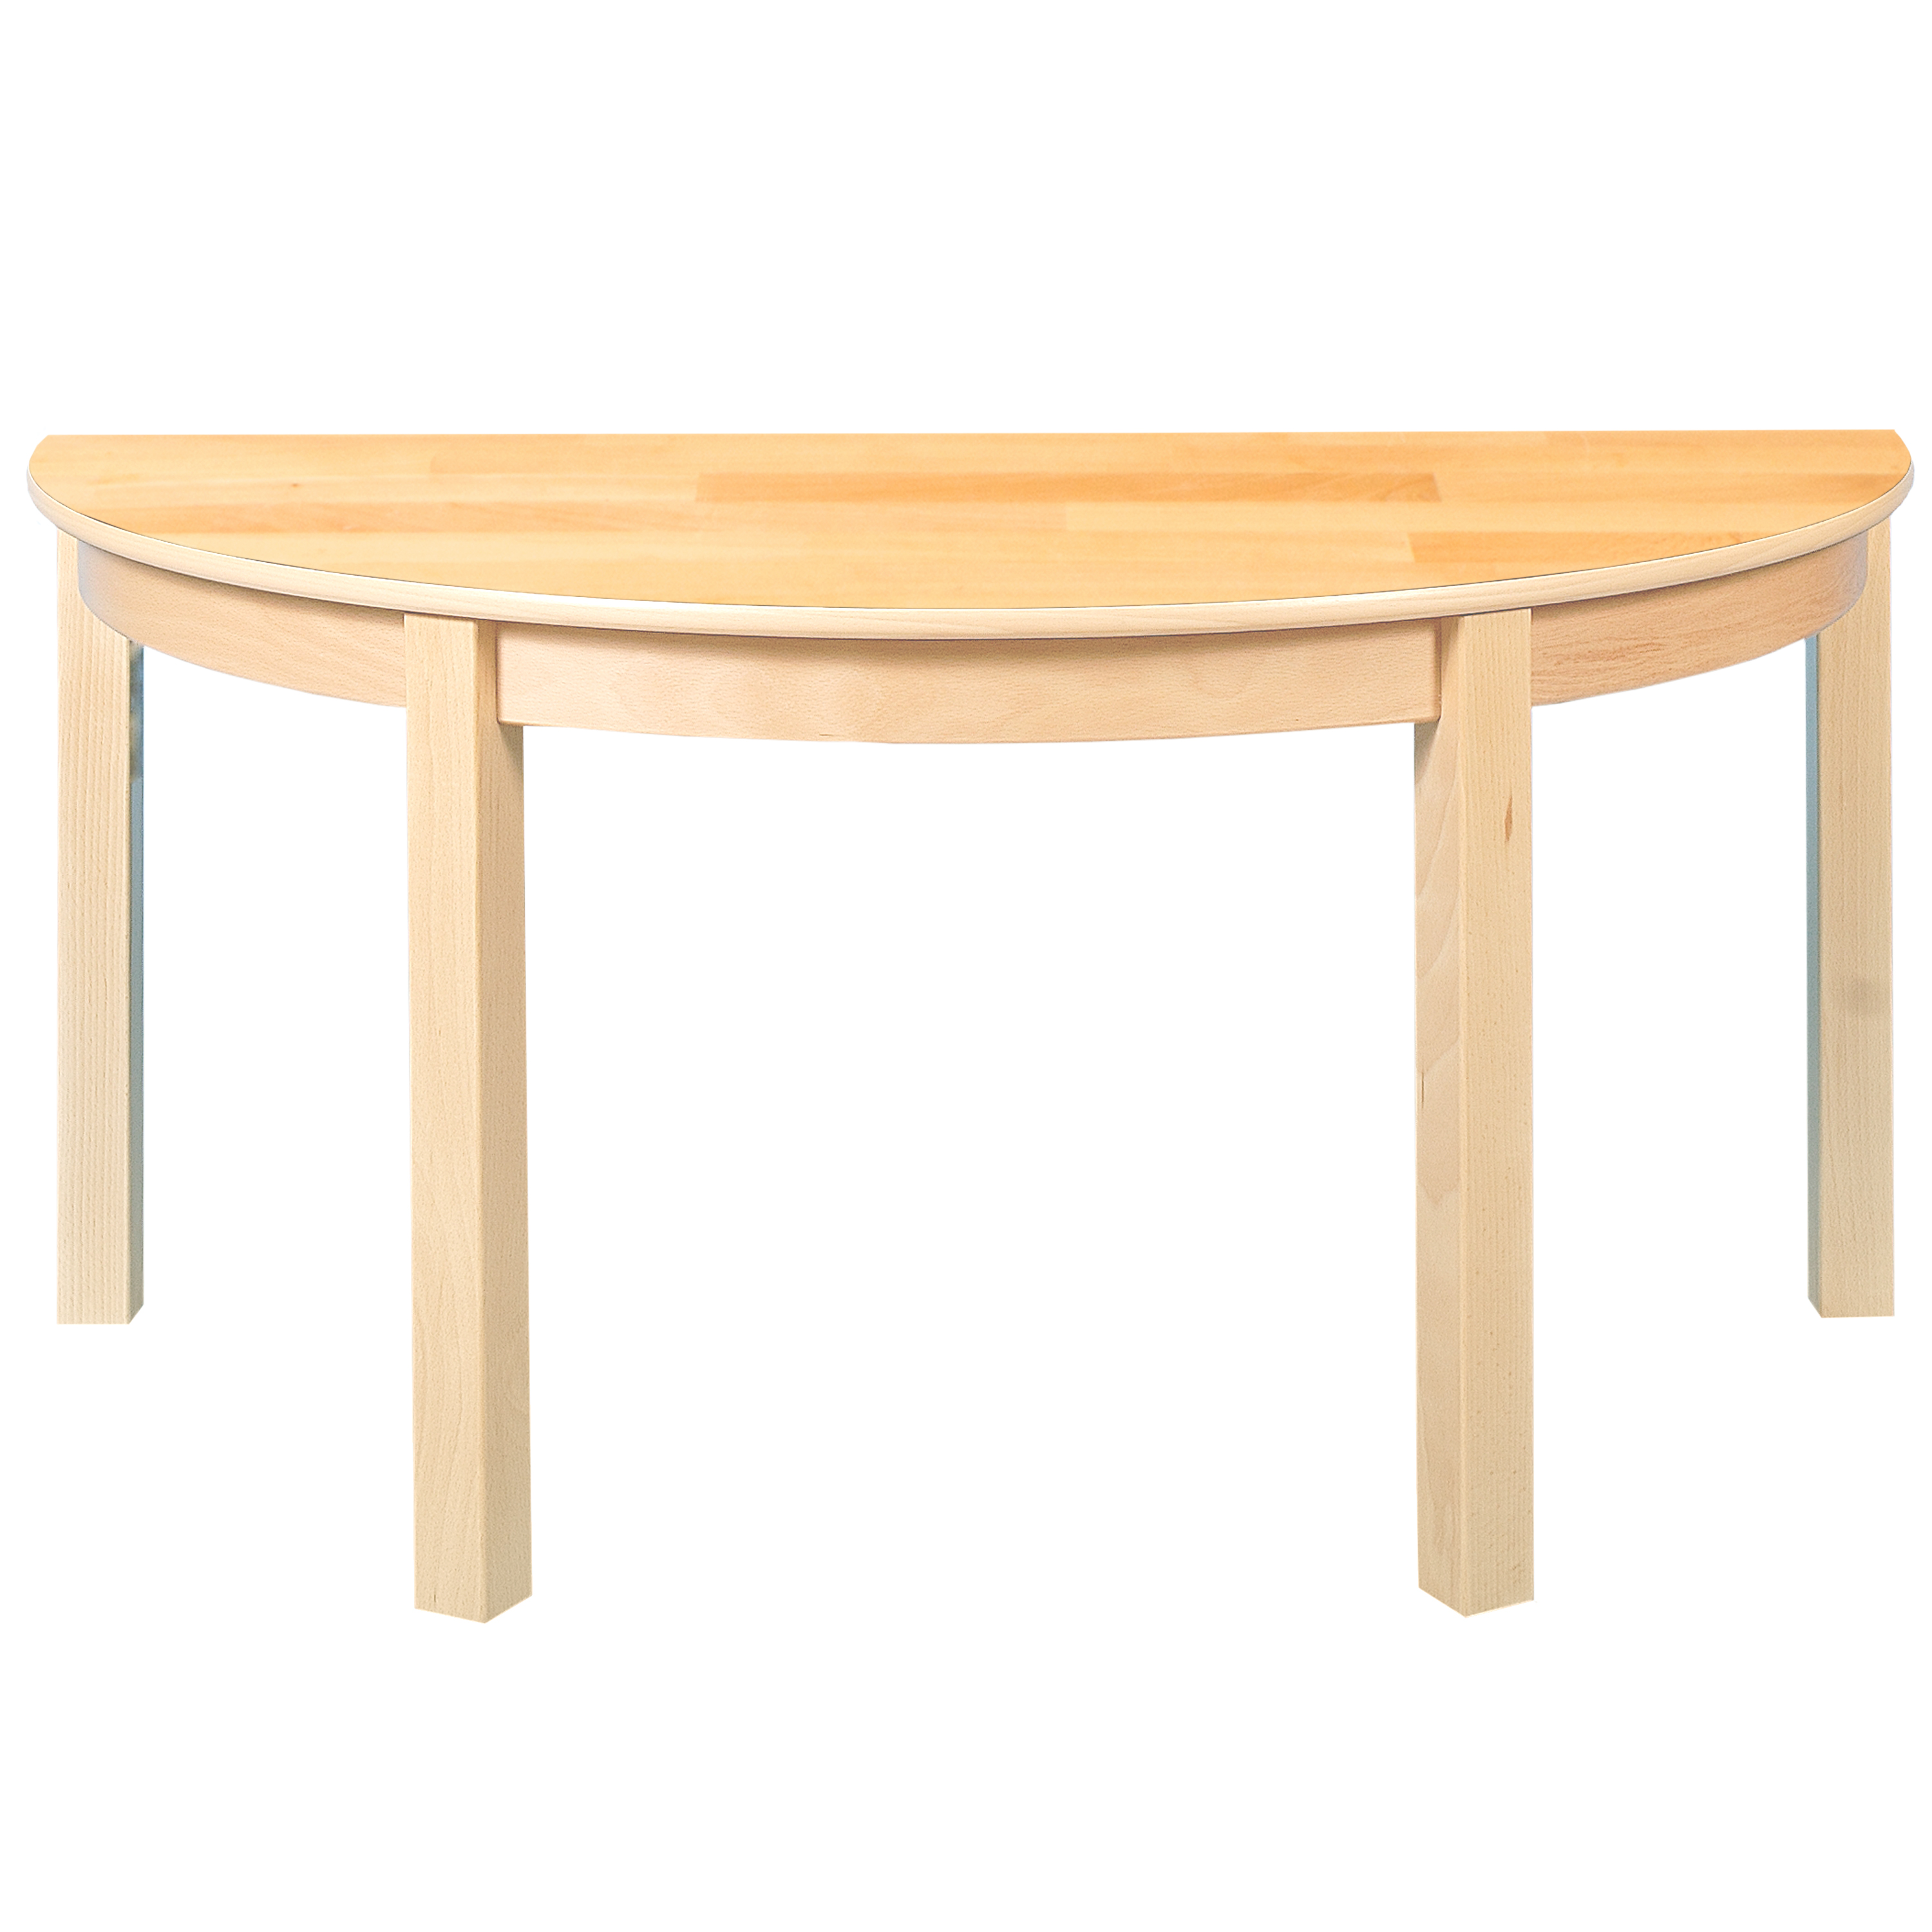 Halbkreis-Tisch, Durchmesser 120 cm, Tischhöhe 58 cm